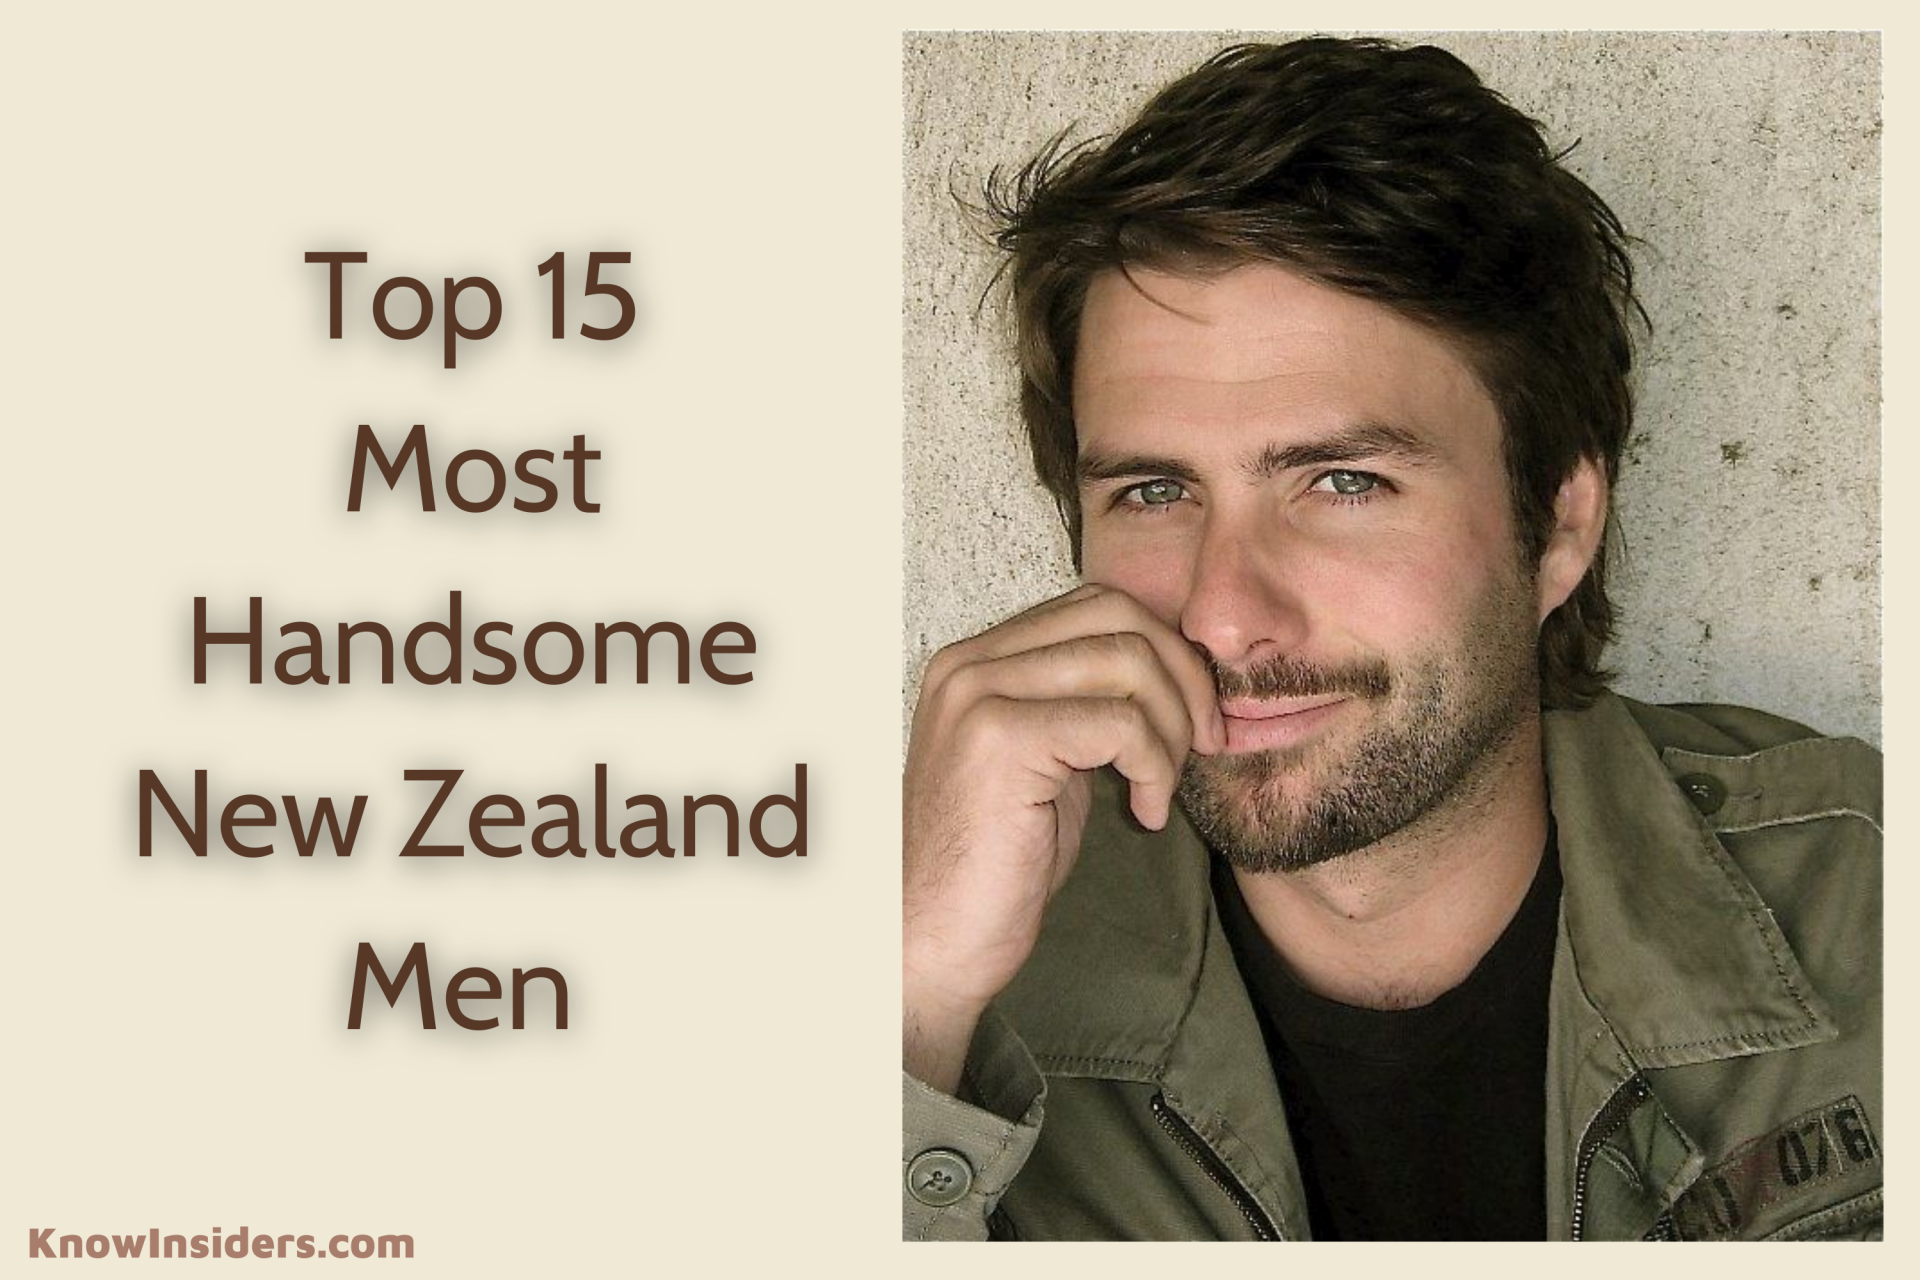 Top 15 Most Handsome Men in New Zealand - Updated